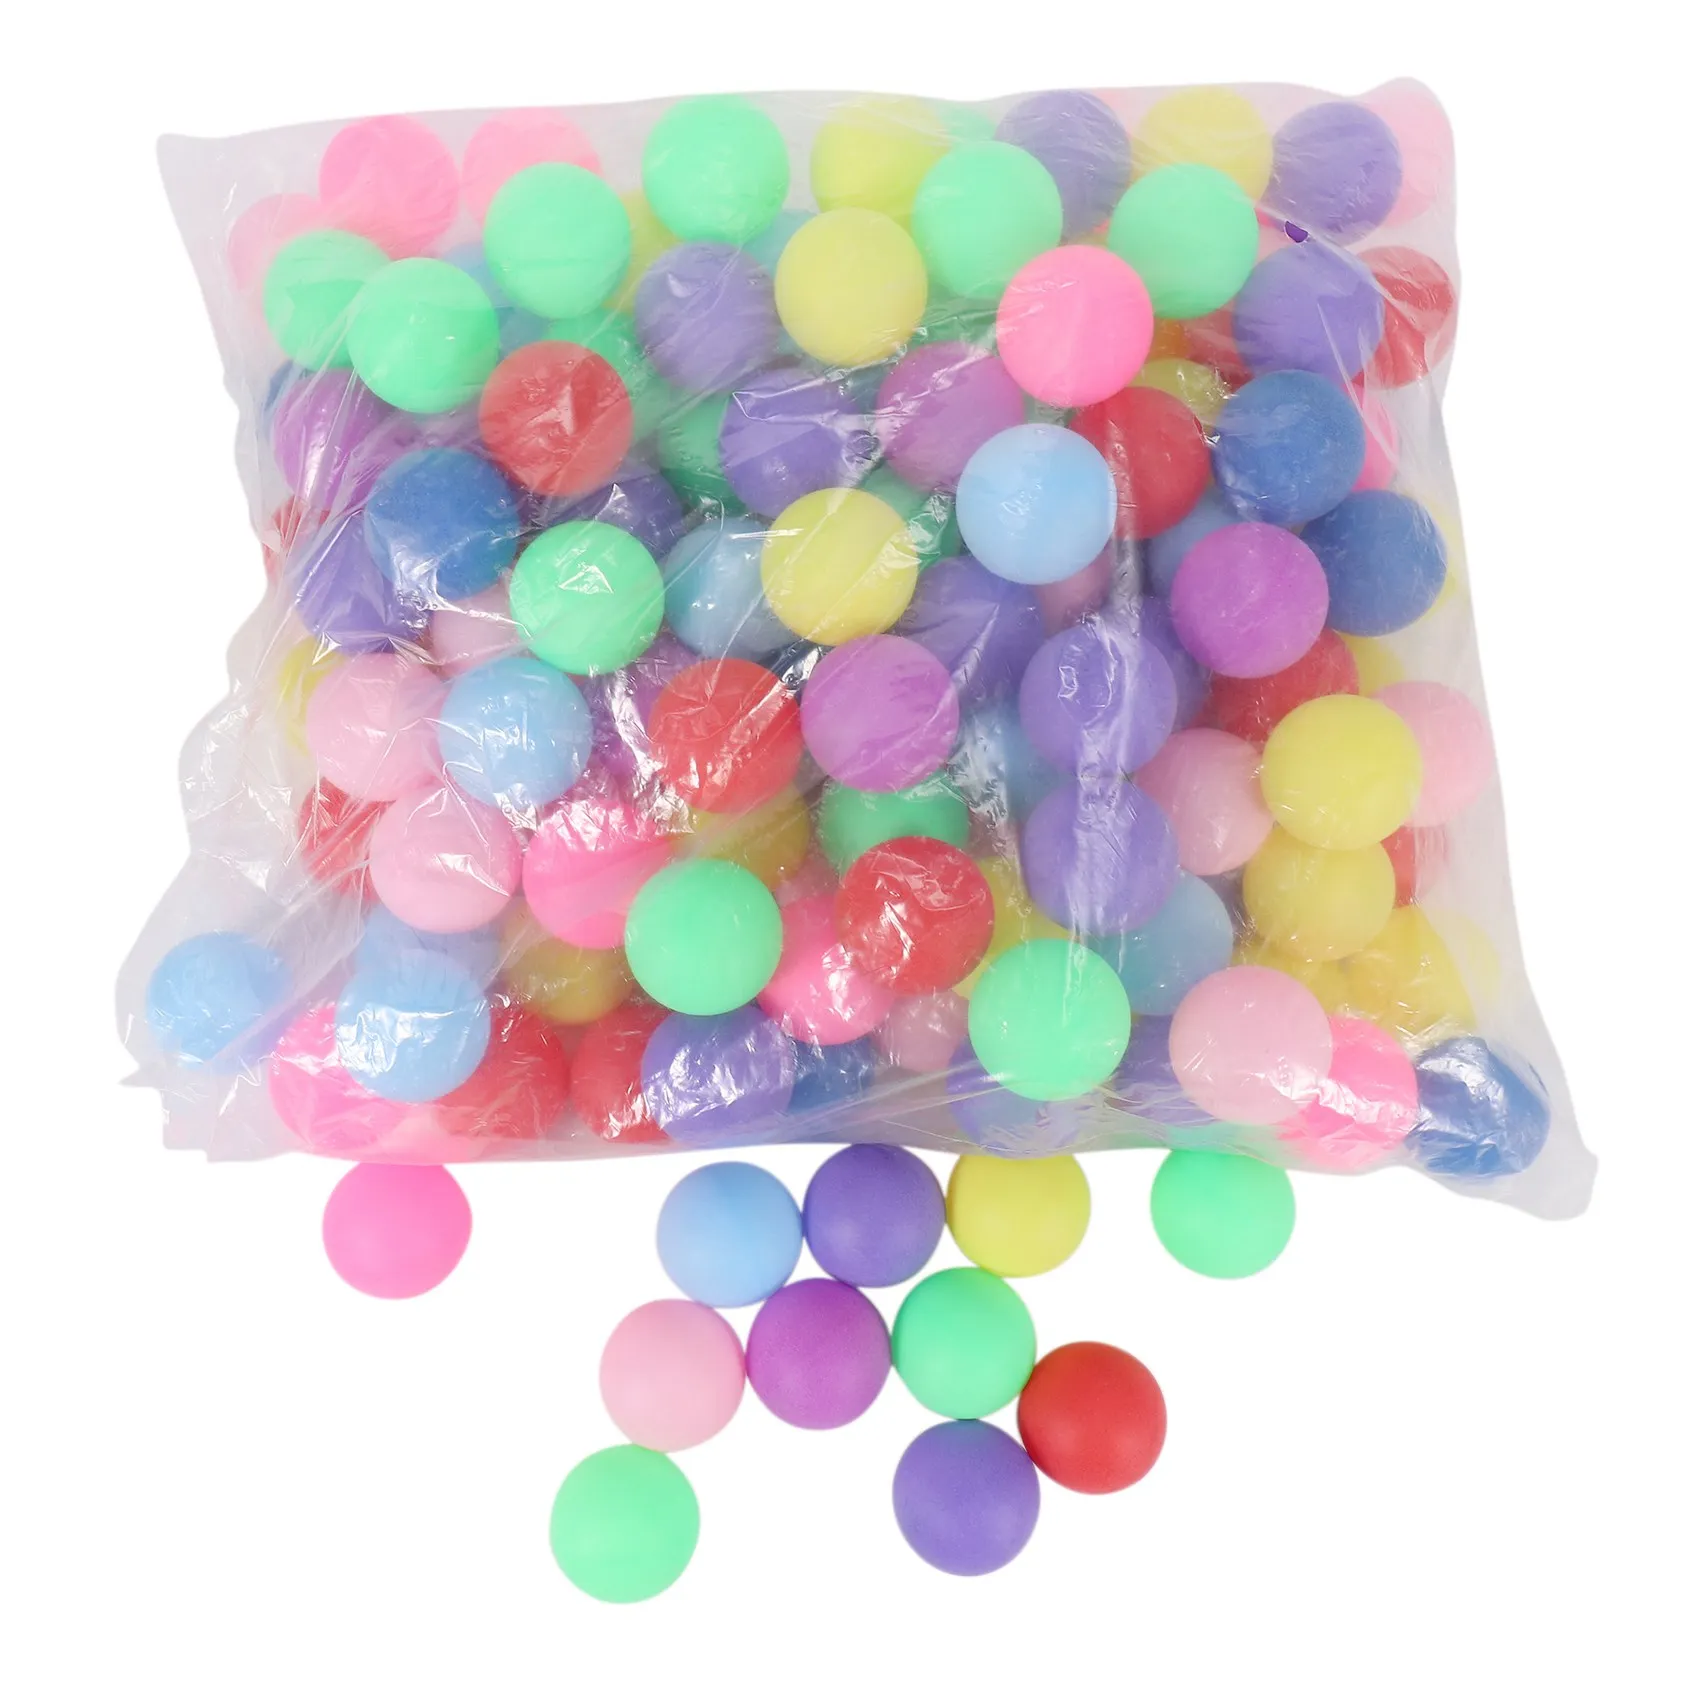 

150 шт./упаковка, разноцветные мячи для пинг-понга, 40 мм